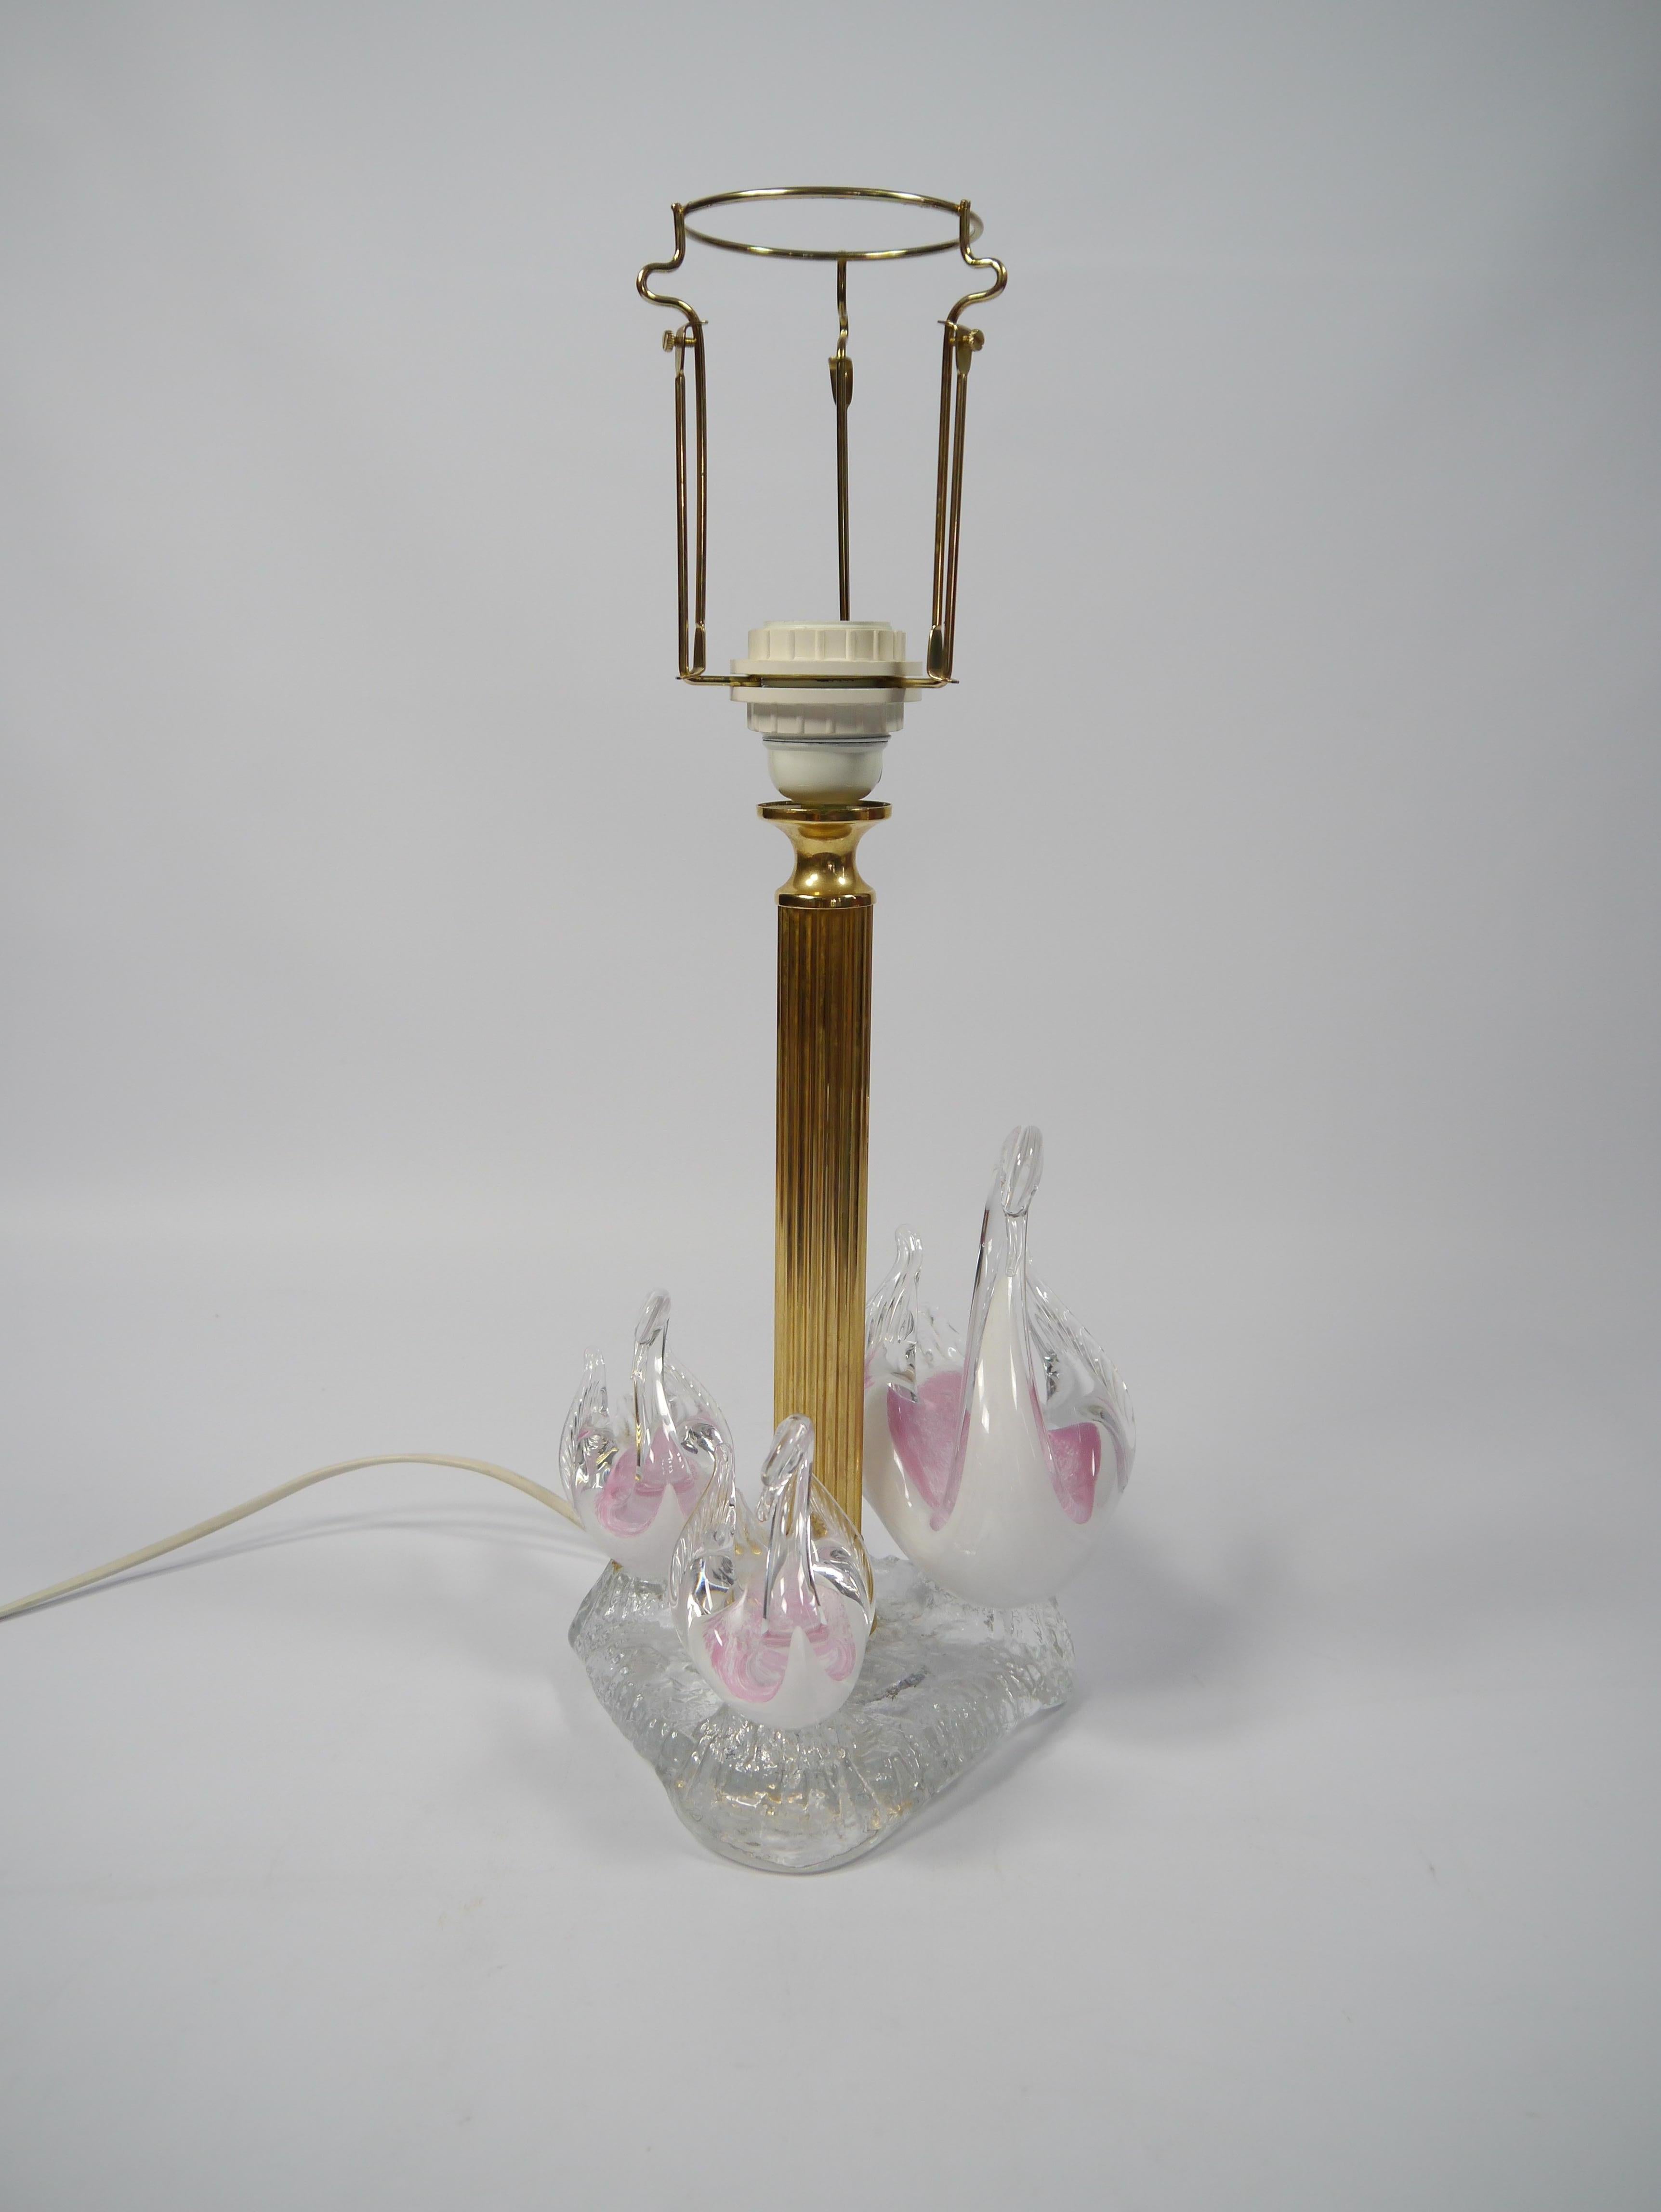 Kitschige Tischlampe aus Messing und Glas mit drei Schwänen aus Kunstglas in rosafarbenen Tönen.